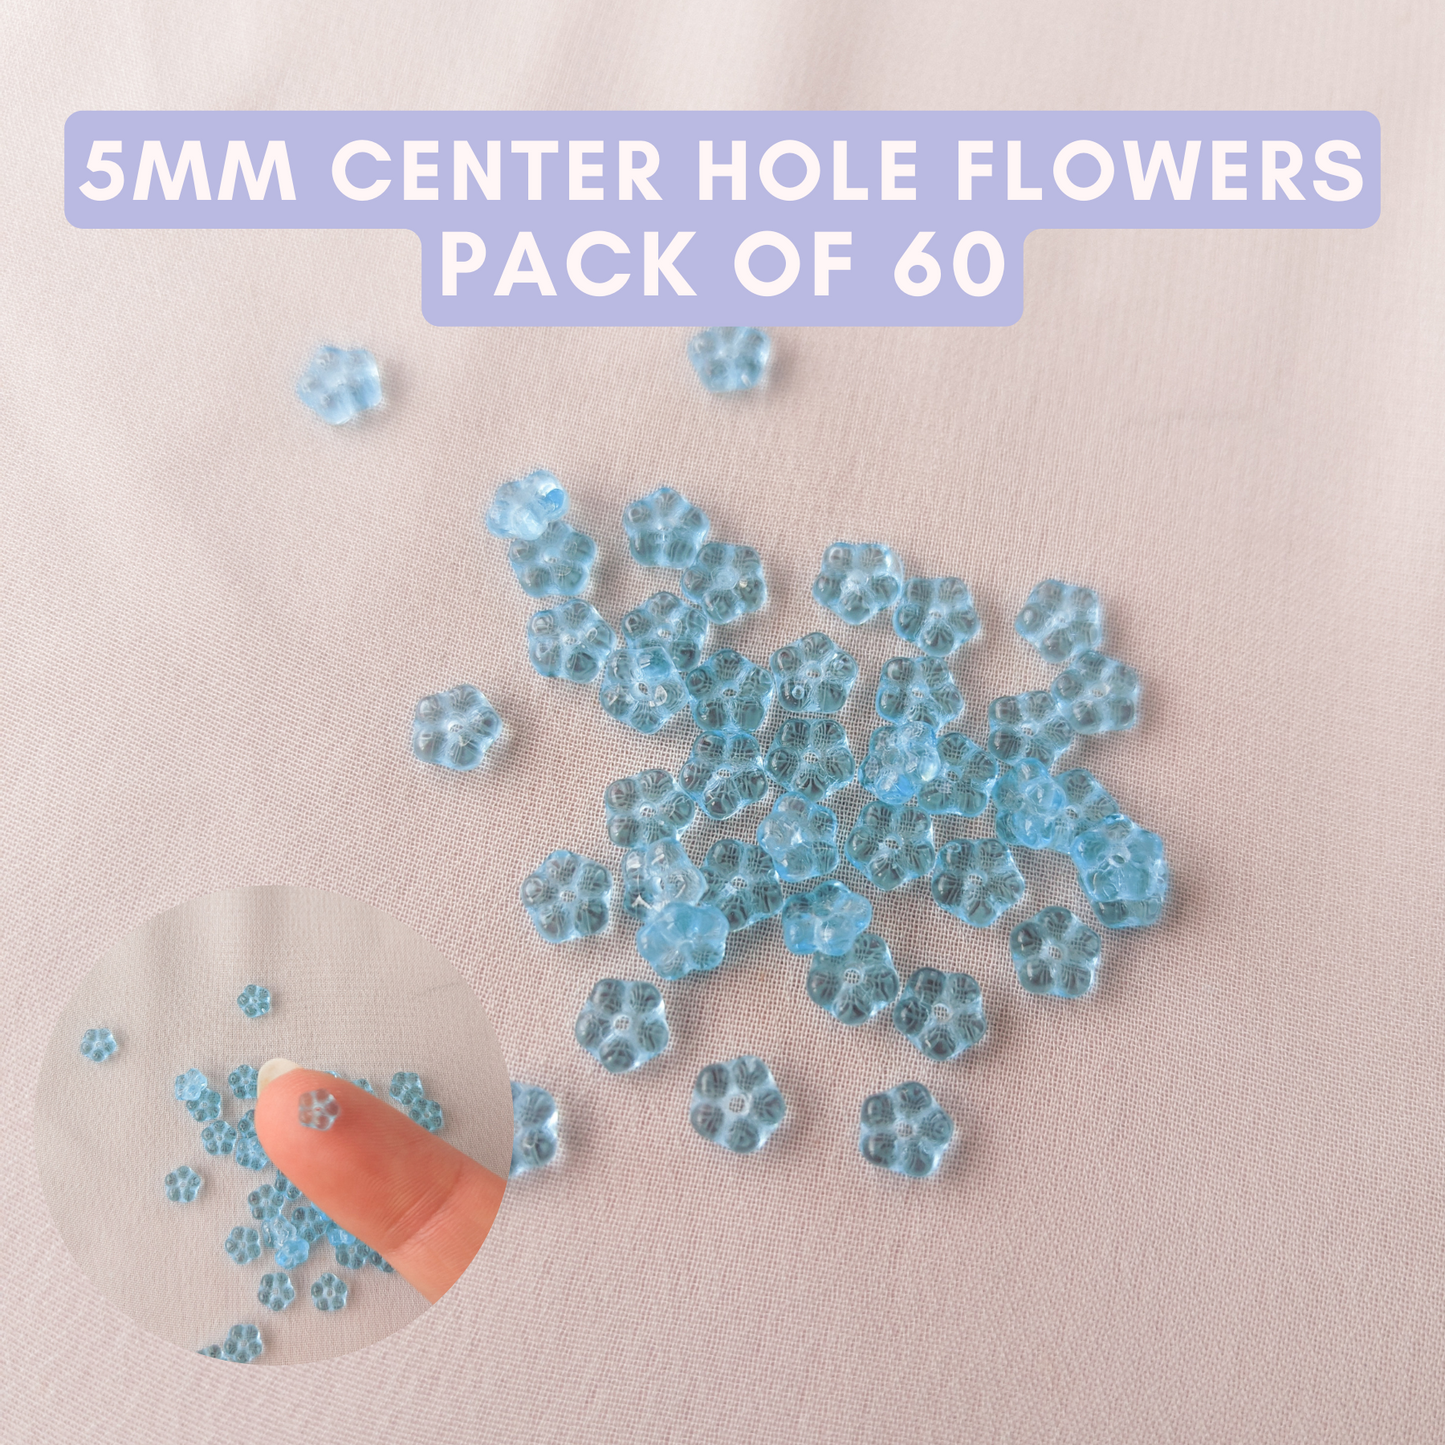 Flowers - Aqua Sky Blue - 5mm with Center Hole